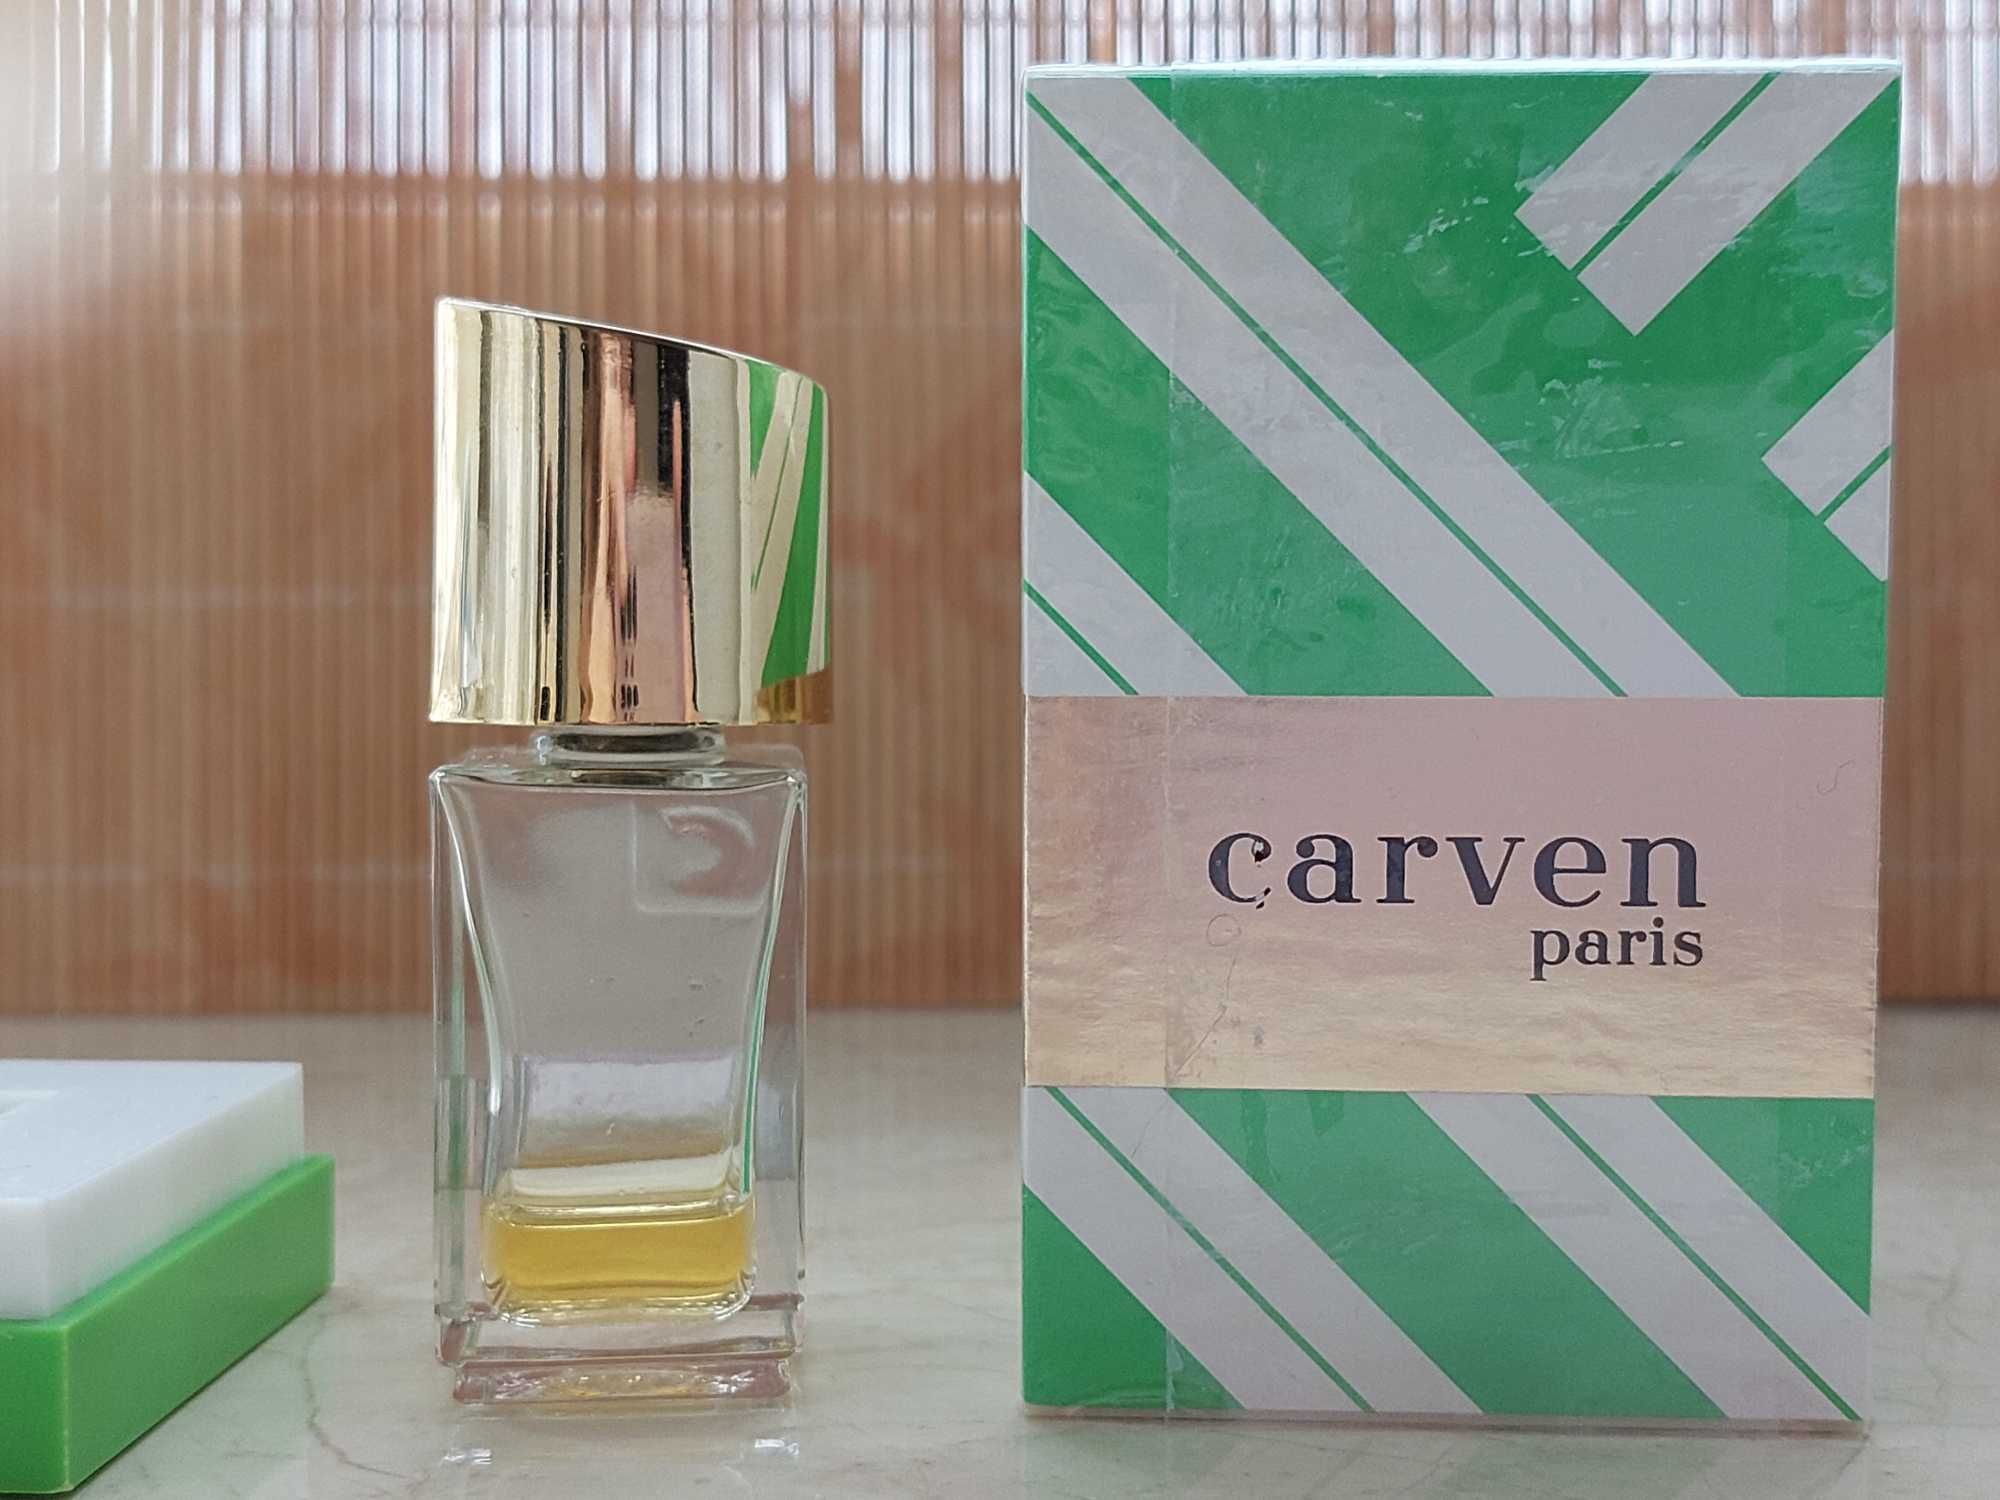 Коллекционные винтажные духи Carven paris Ma Griffe parfum, редкость